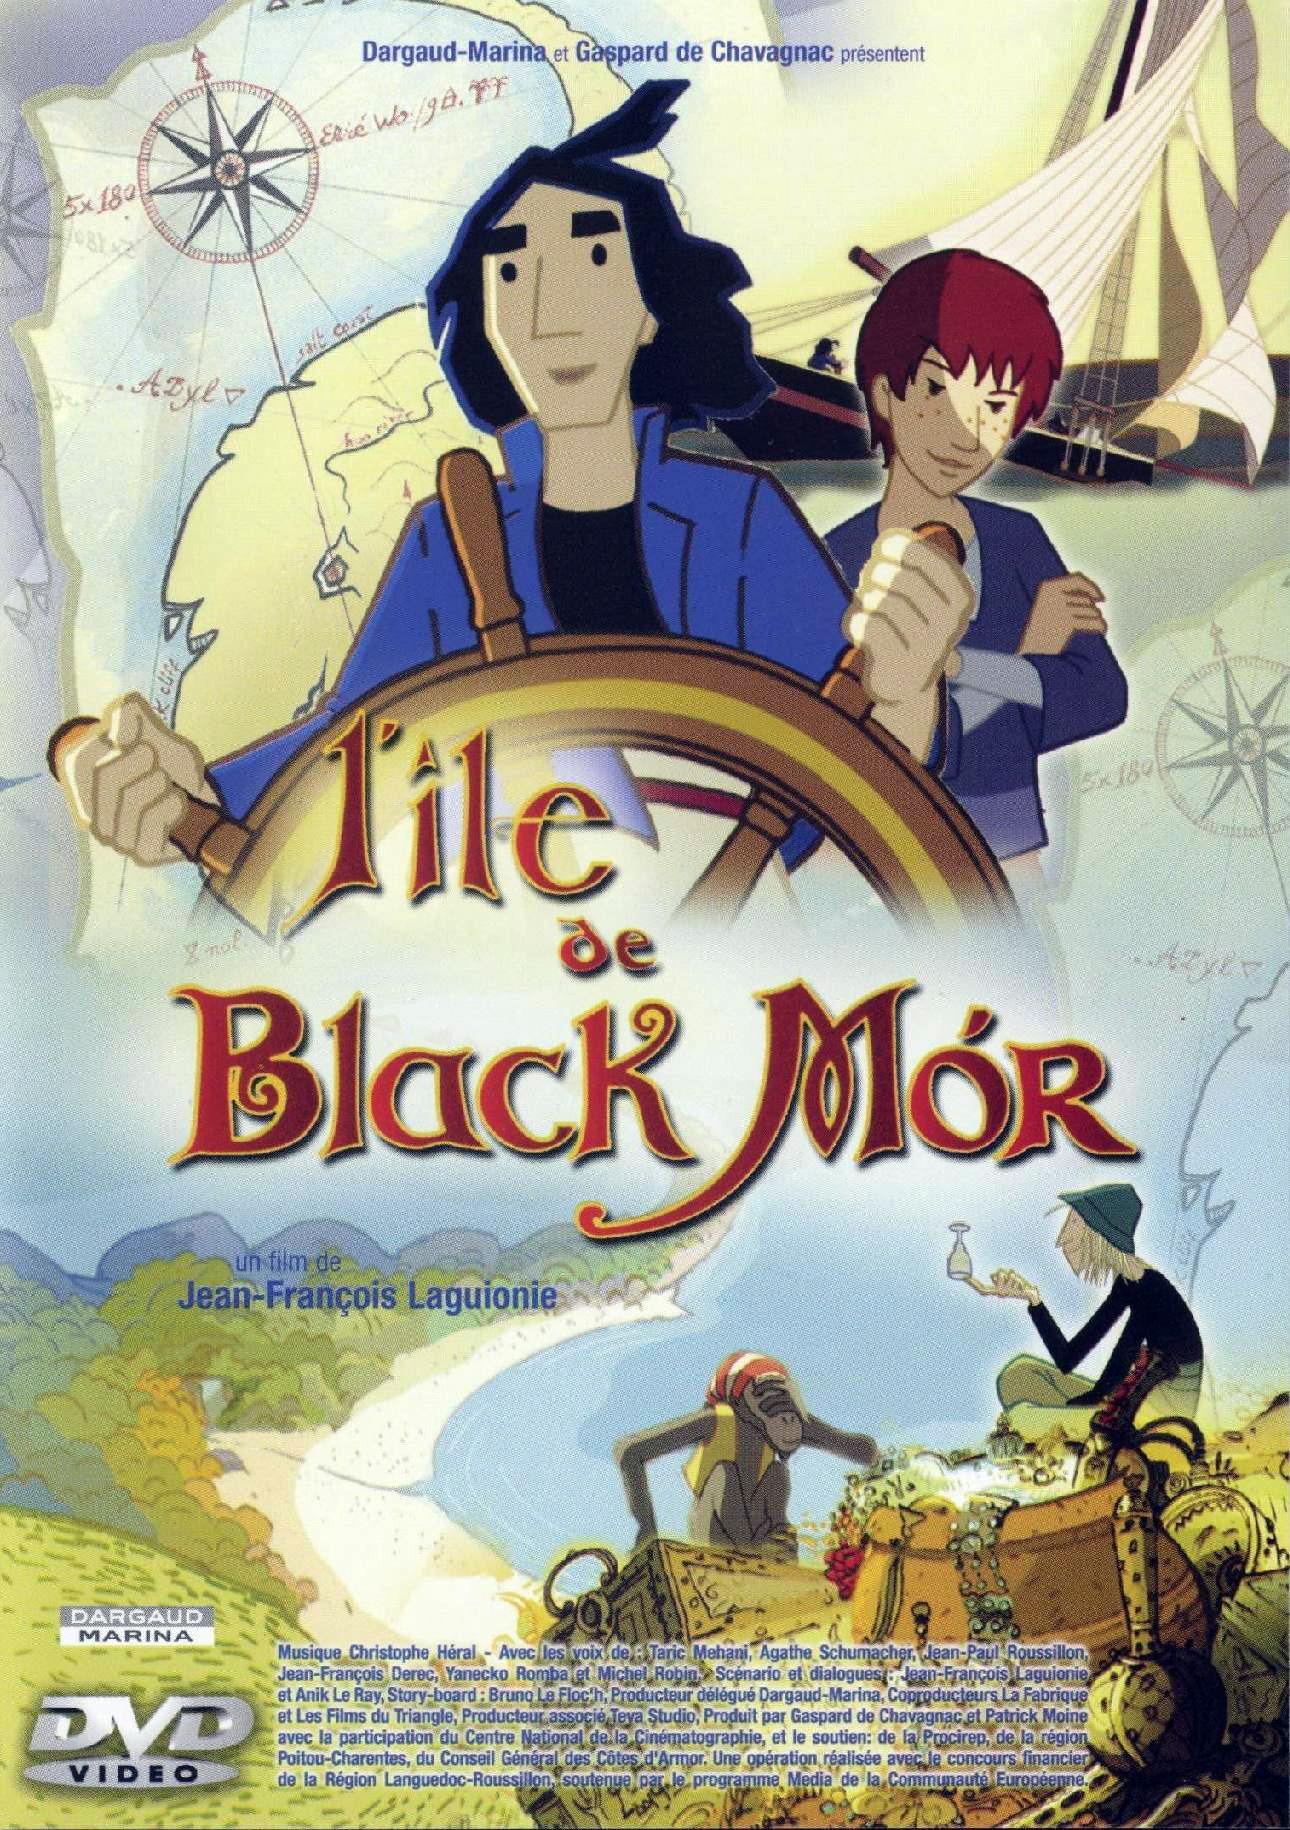 Black Mór szigete (L' Île de Black Mór)